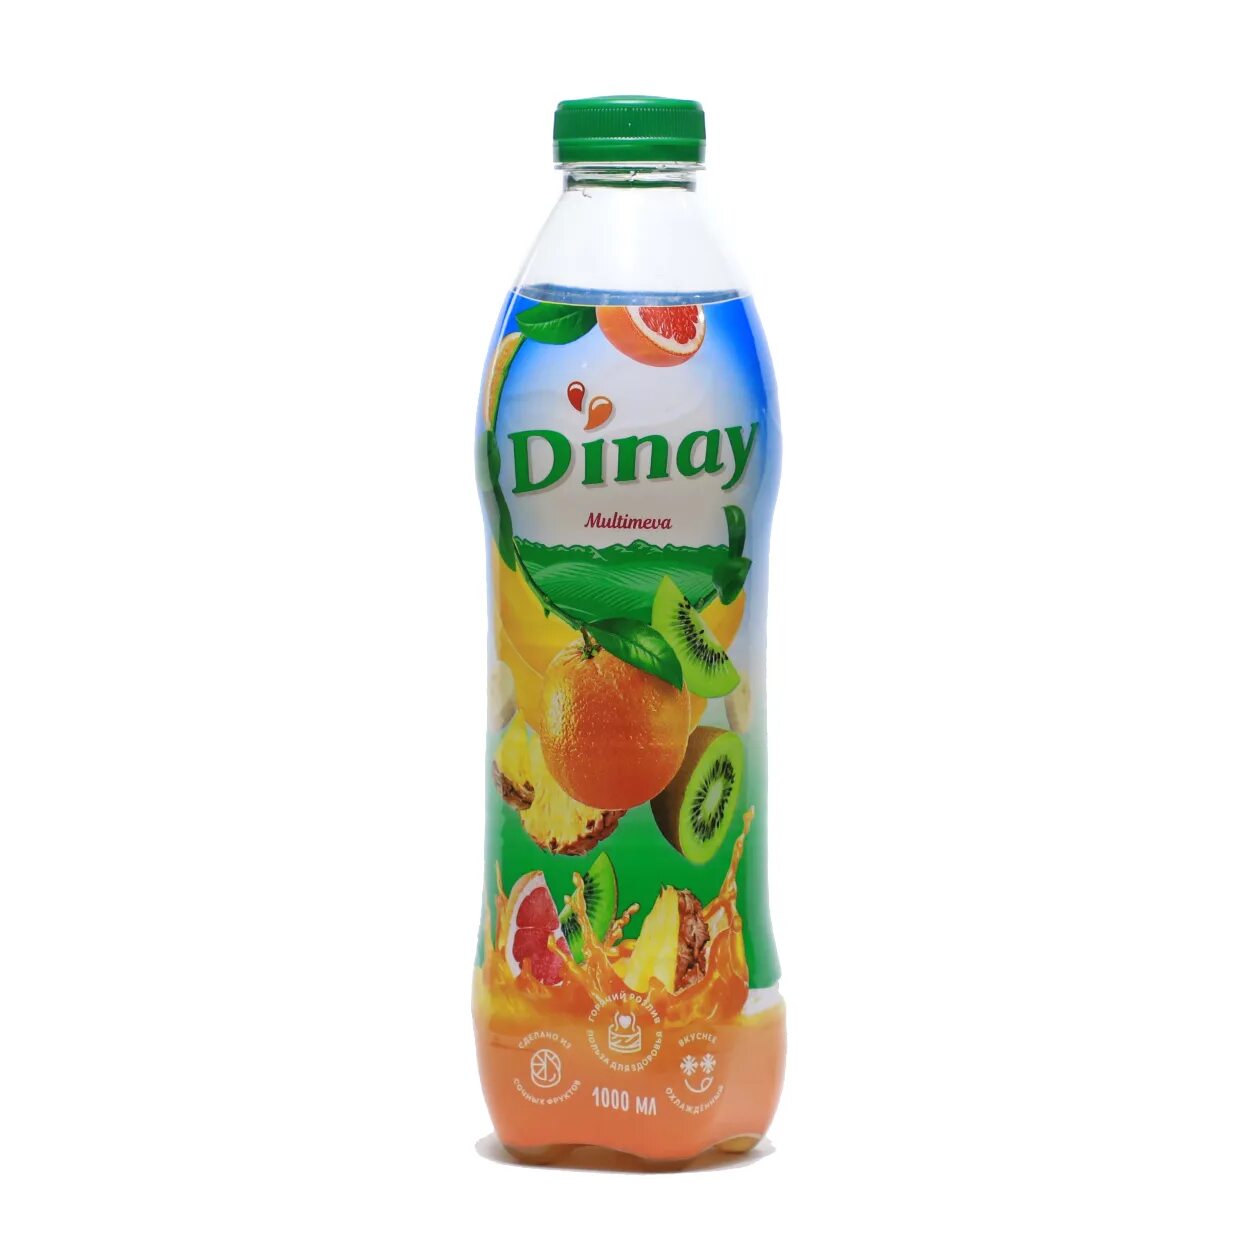 Dinay сок. Динай напиток. Гринлайн напиток. Dinay Gyu.